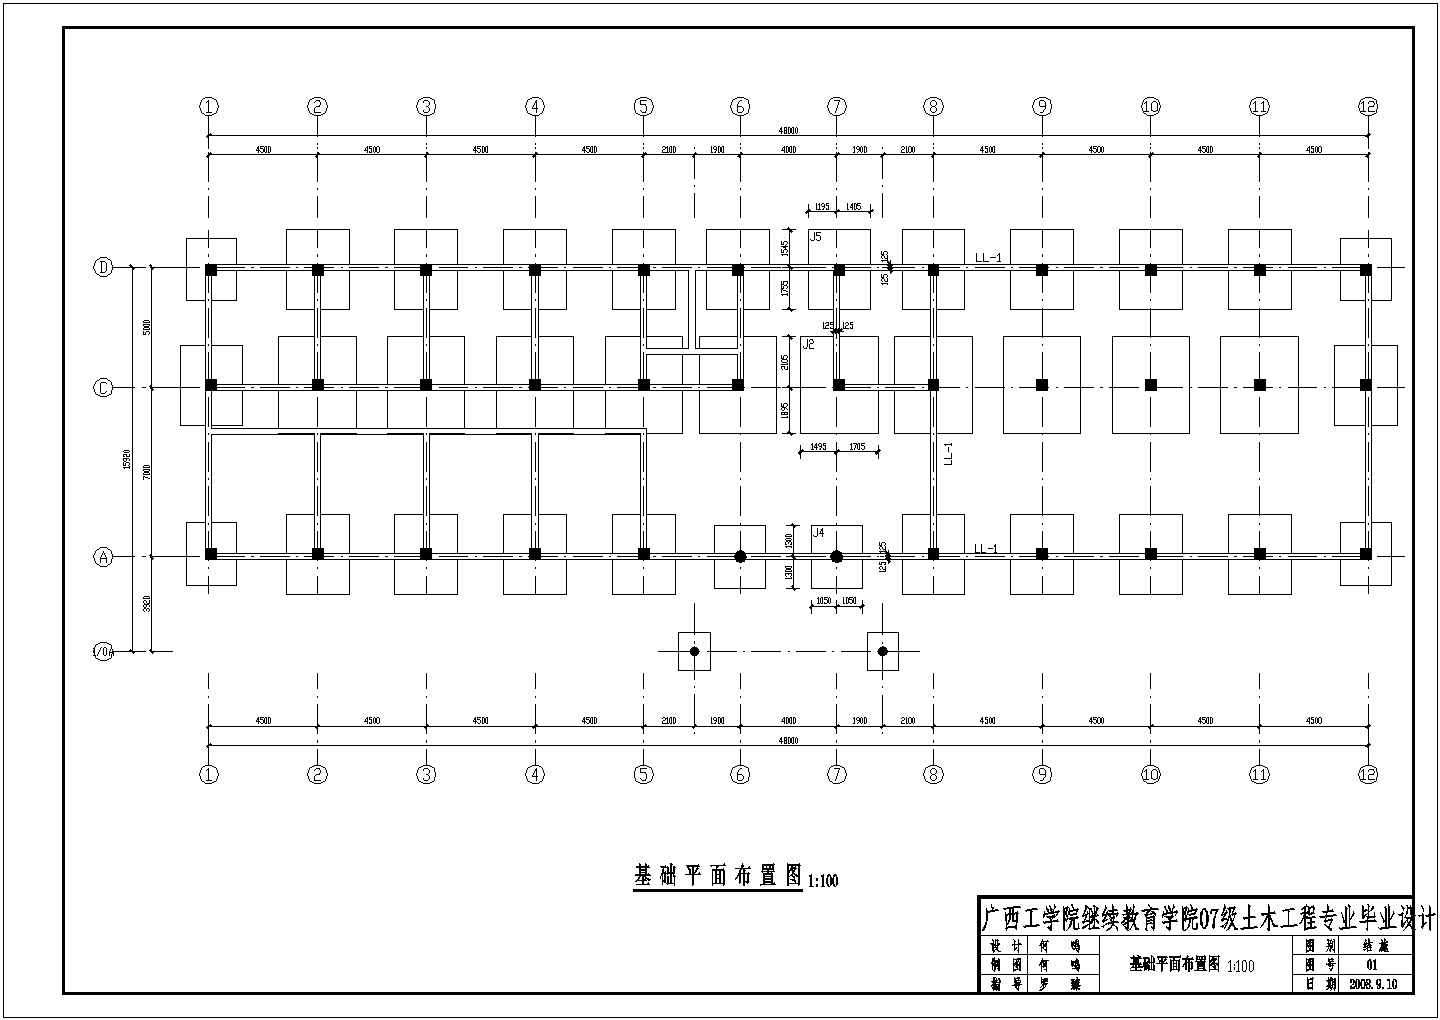 2430平米4层综合办公楼建筑设计图【毕业设计】（含计算书，工程量计算，图纸，实习总结，实习日记，任务书）